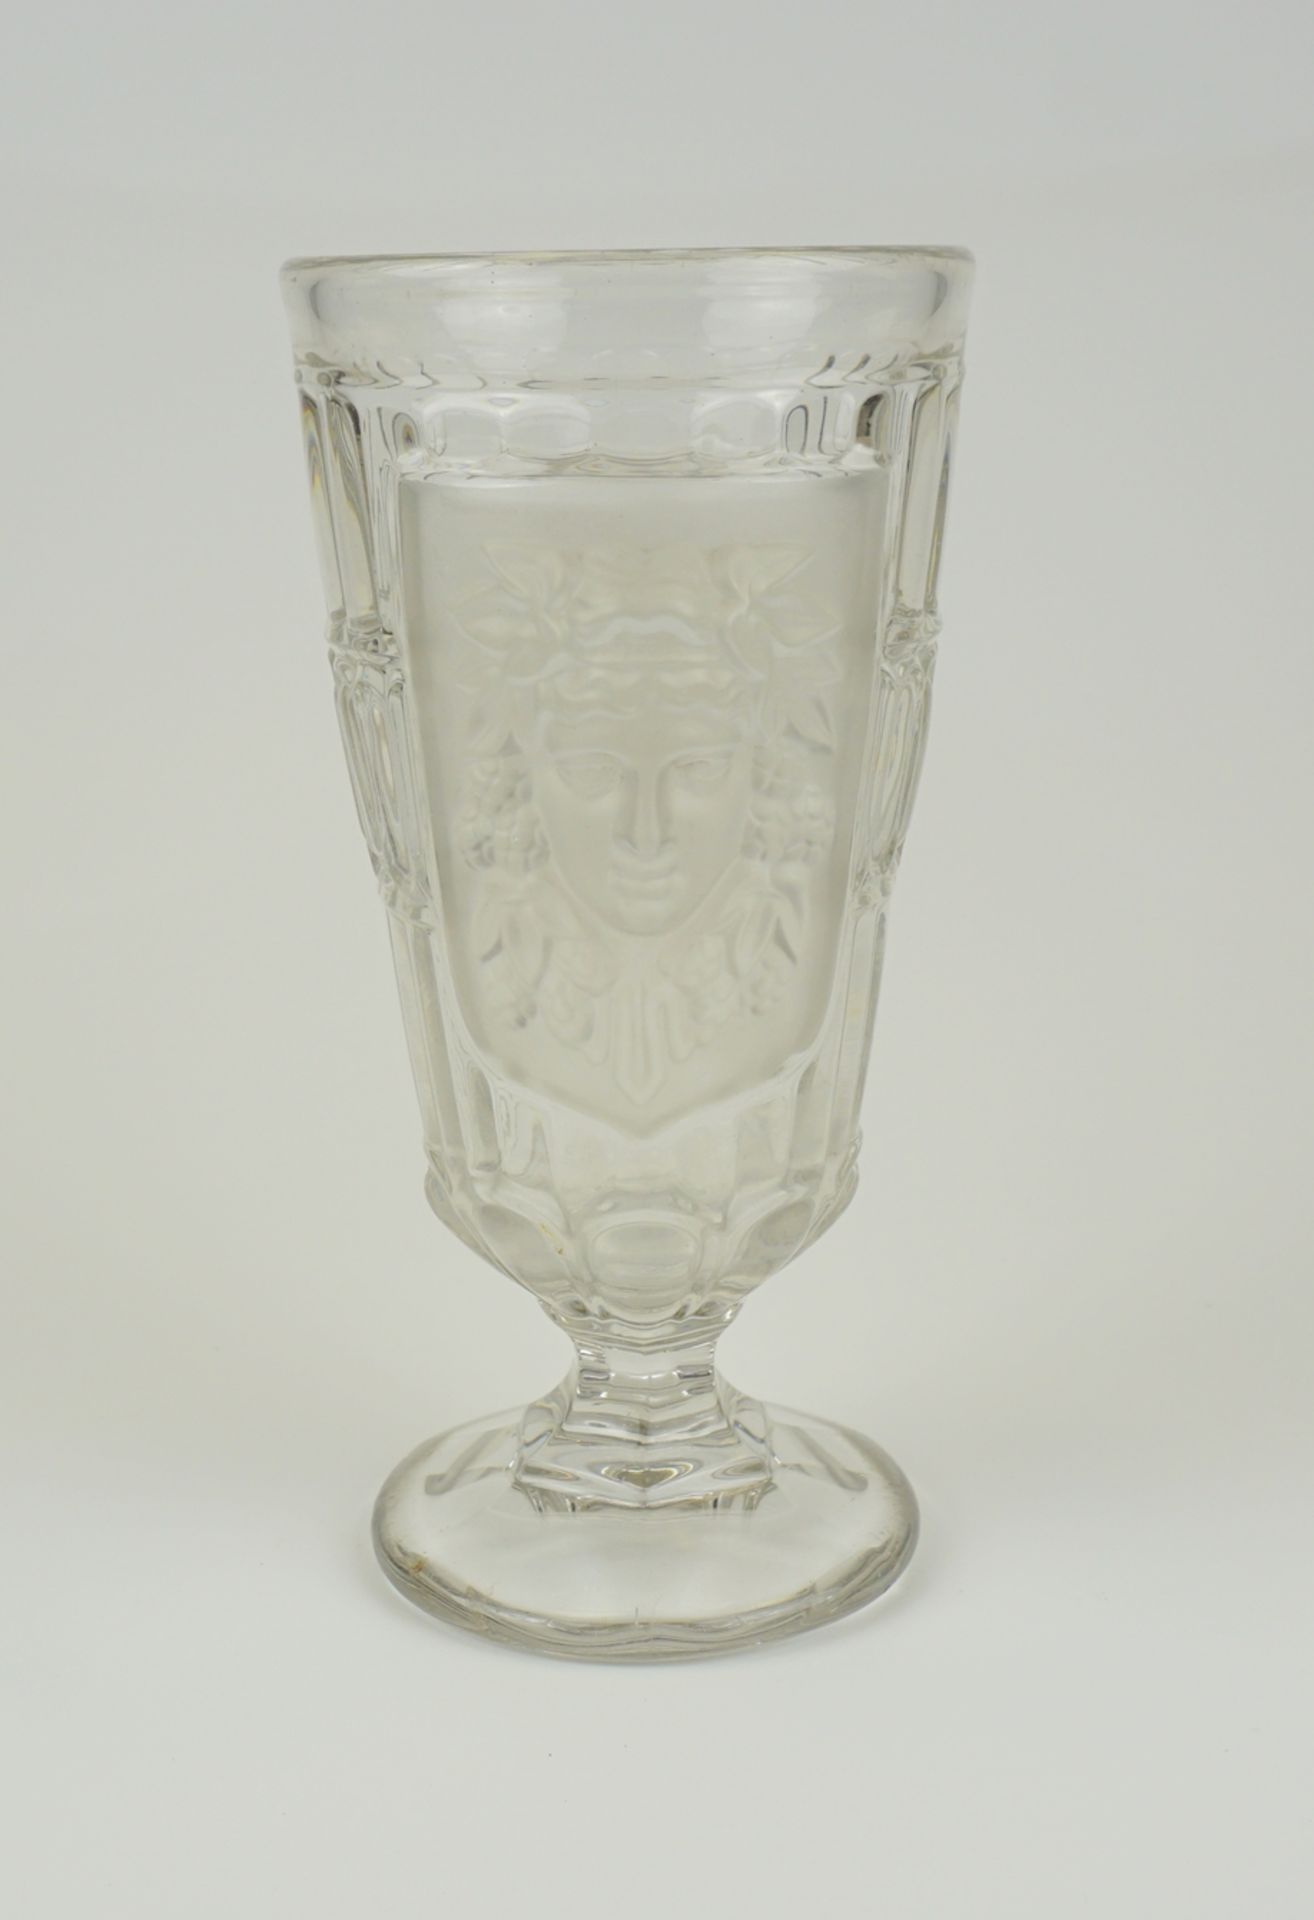 Trinkglas mit satinierten Medaillons, Böhmen, 1920er Jahre - Image 2 of 2